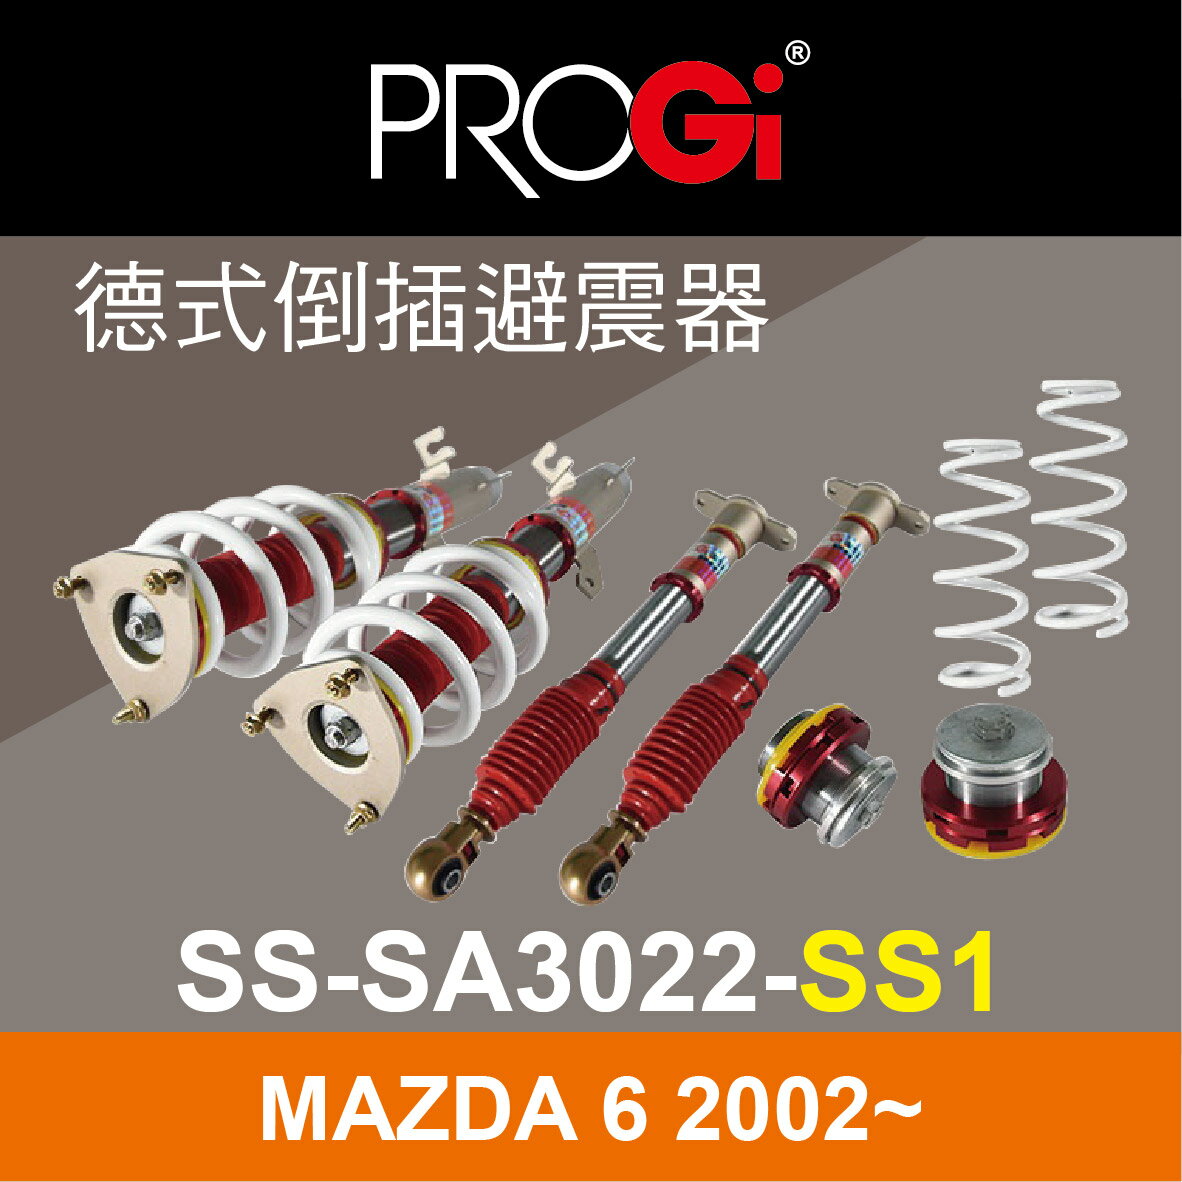 真便宜 [預購]PROGI SS-SA3022-SS1 德式倒插避震器(高低軟硬可調)MAZDA 6 2002~